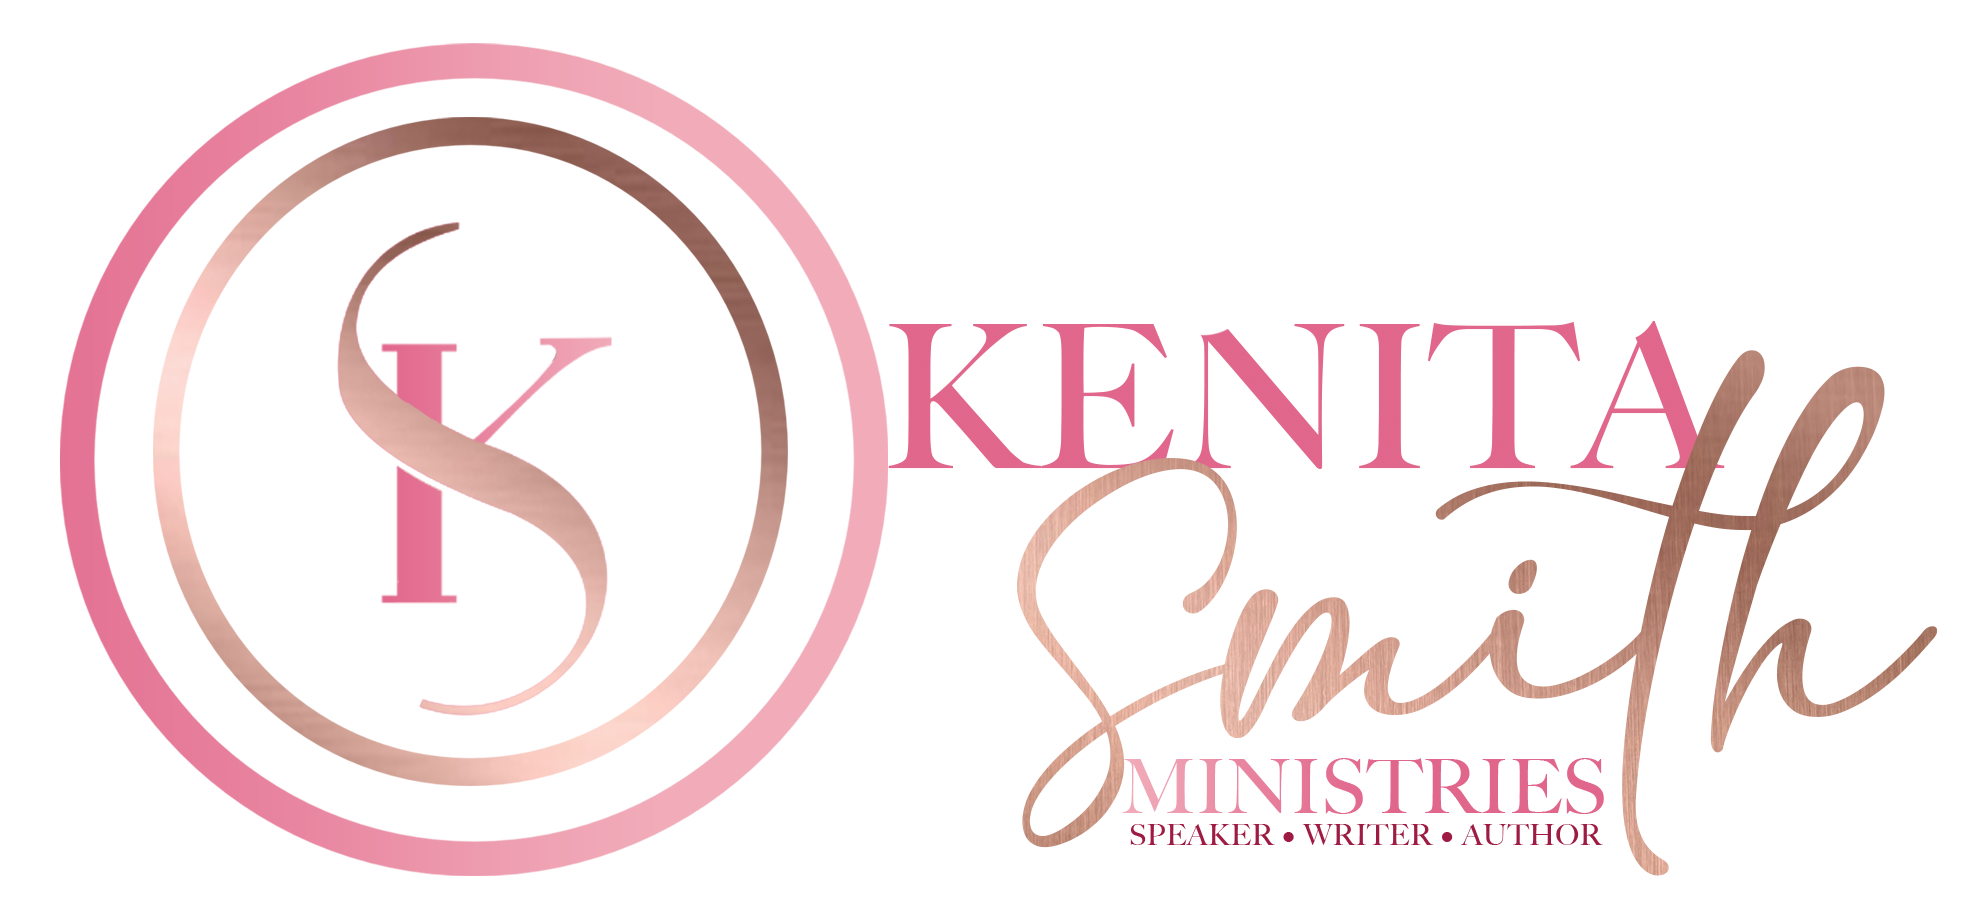 Kenita Smith Ministries